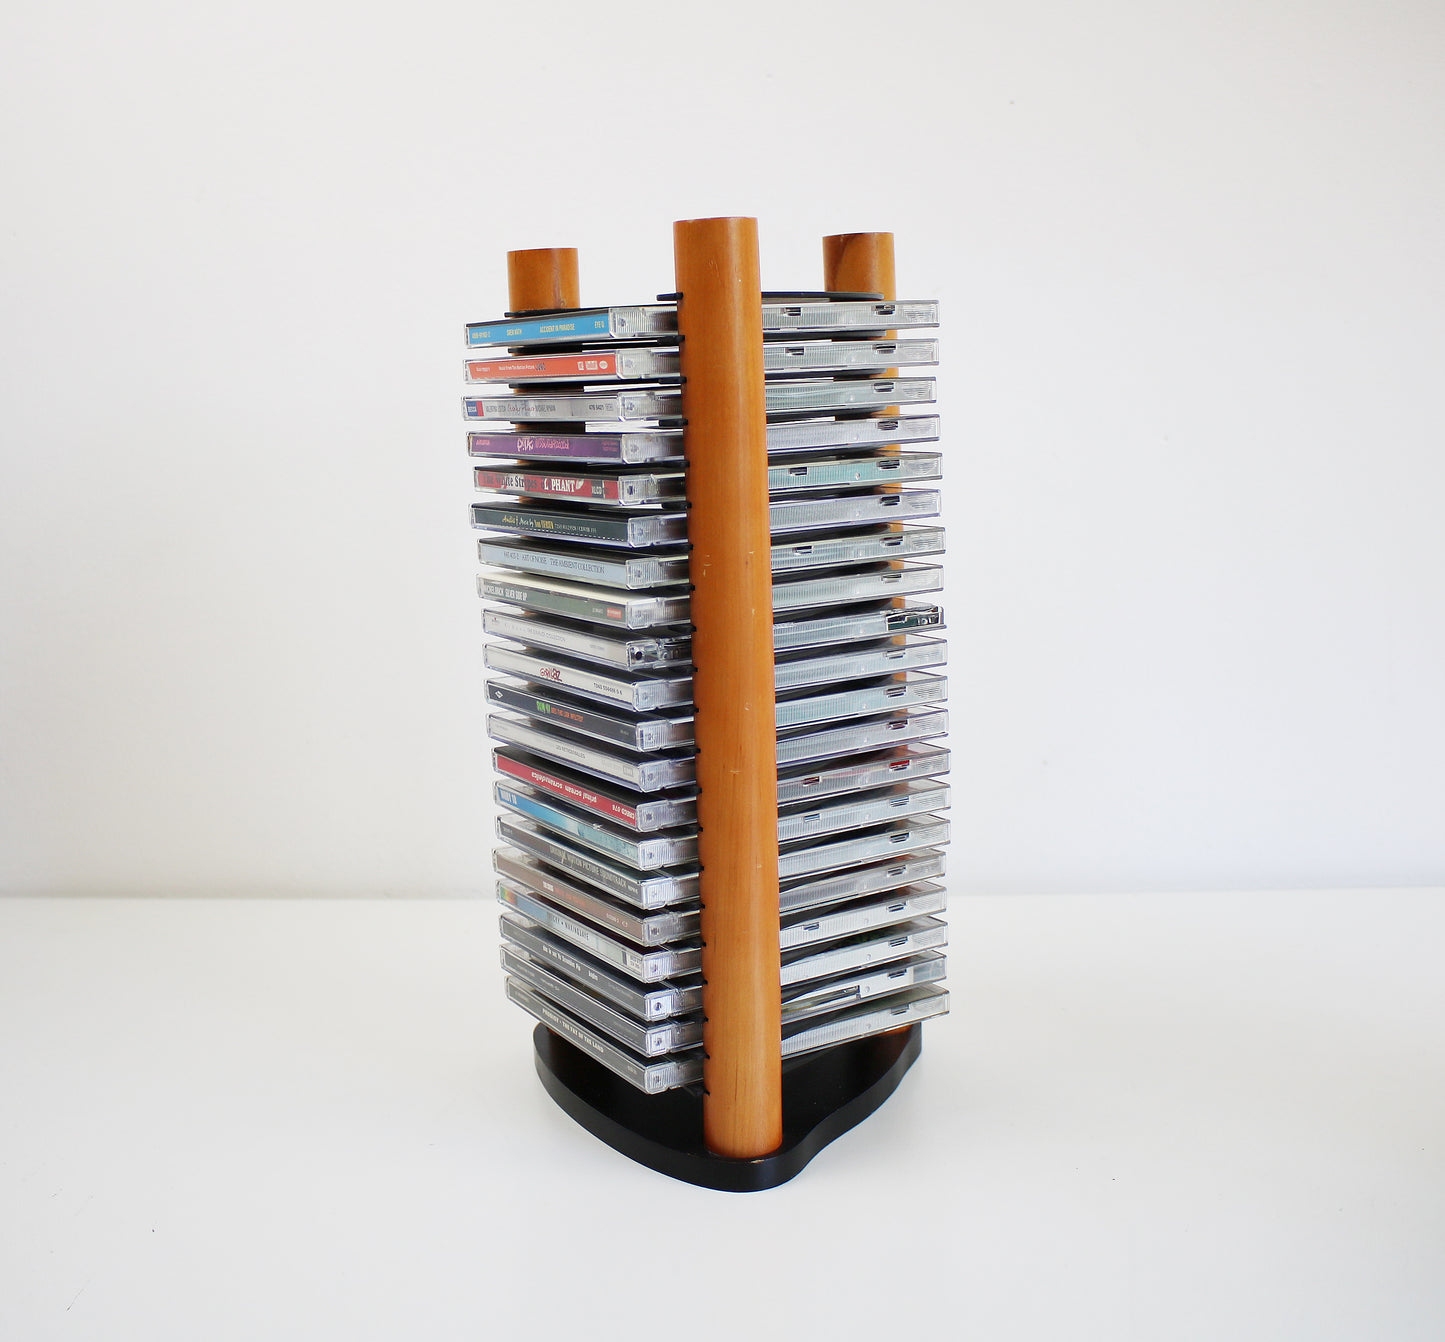 1990s Y2K CD tower / storage rack in wood and acrylic - postmodern design